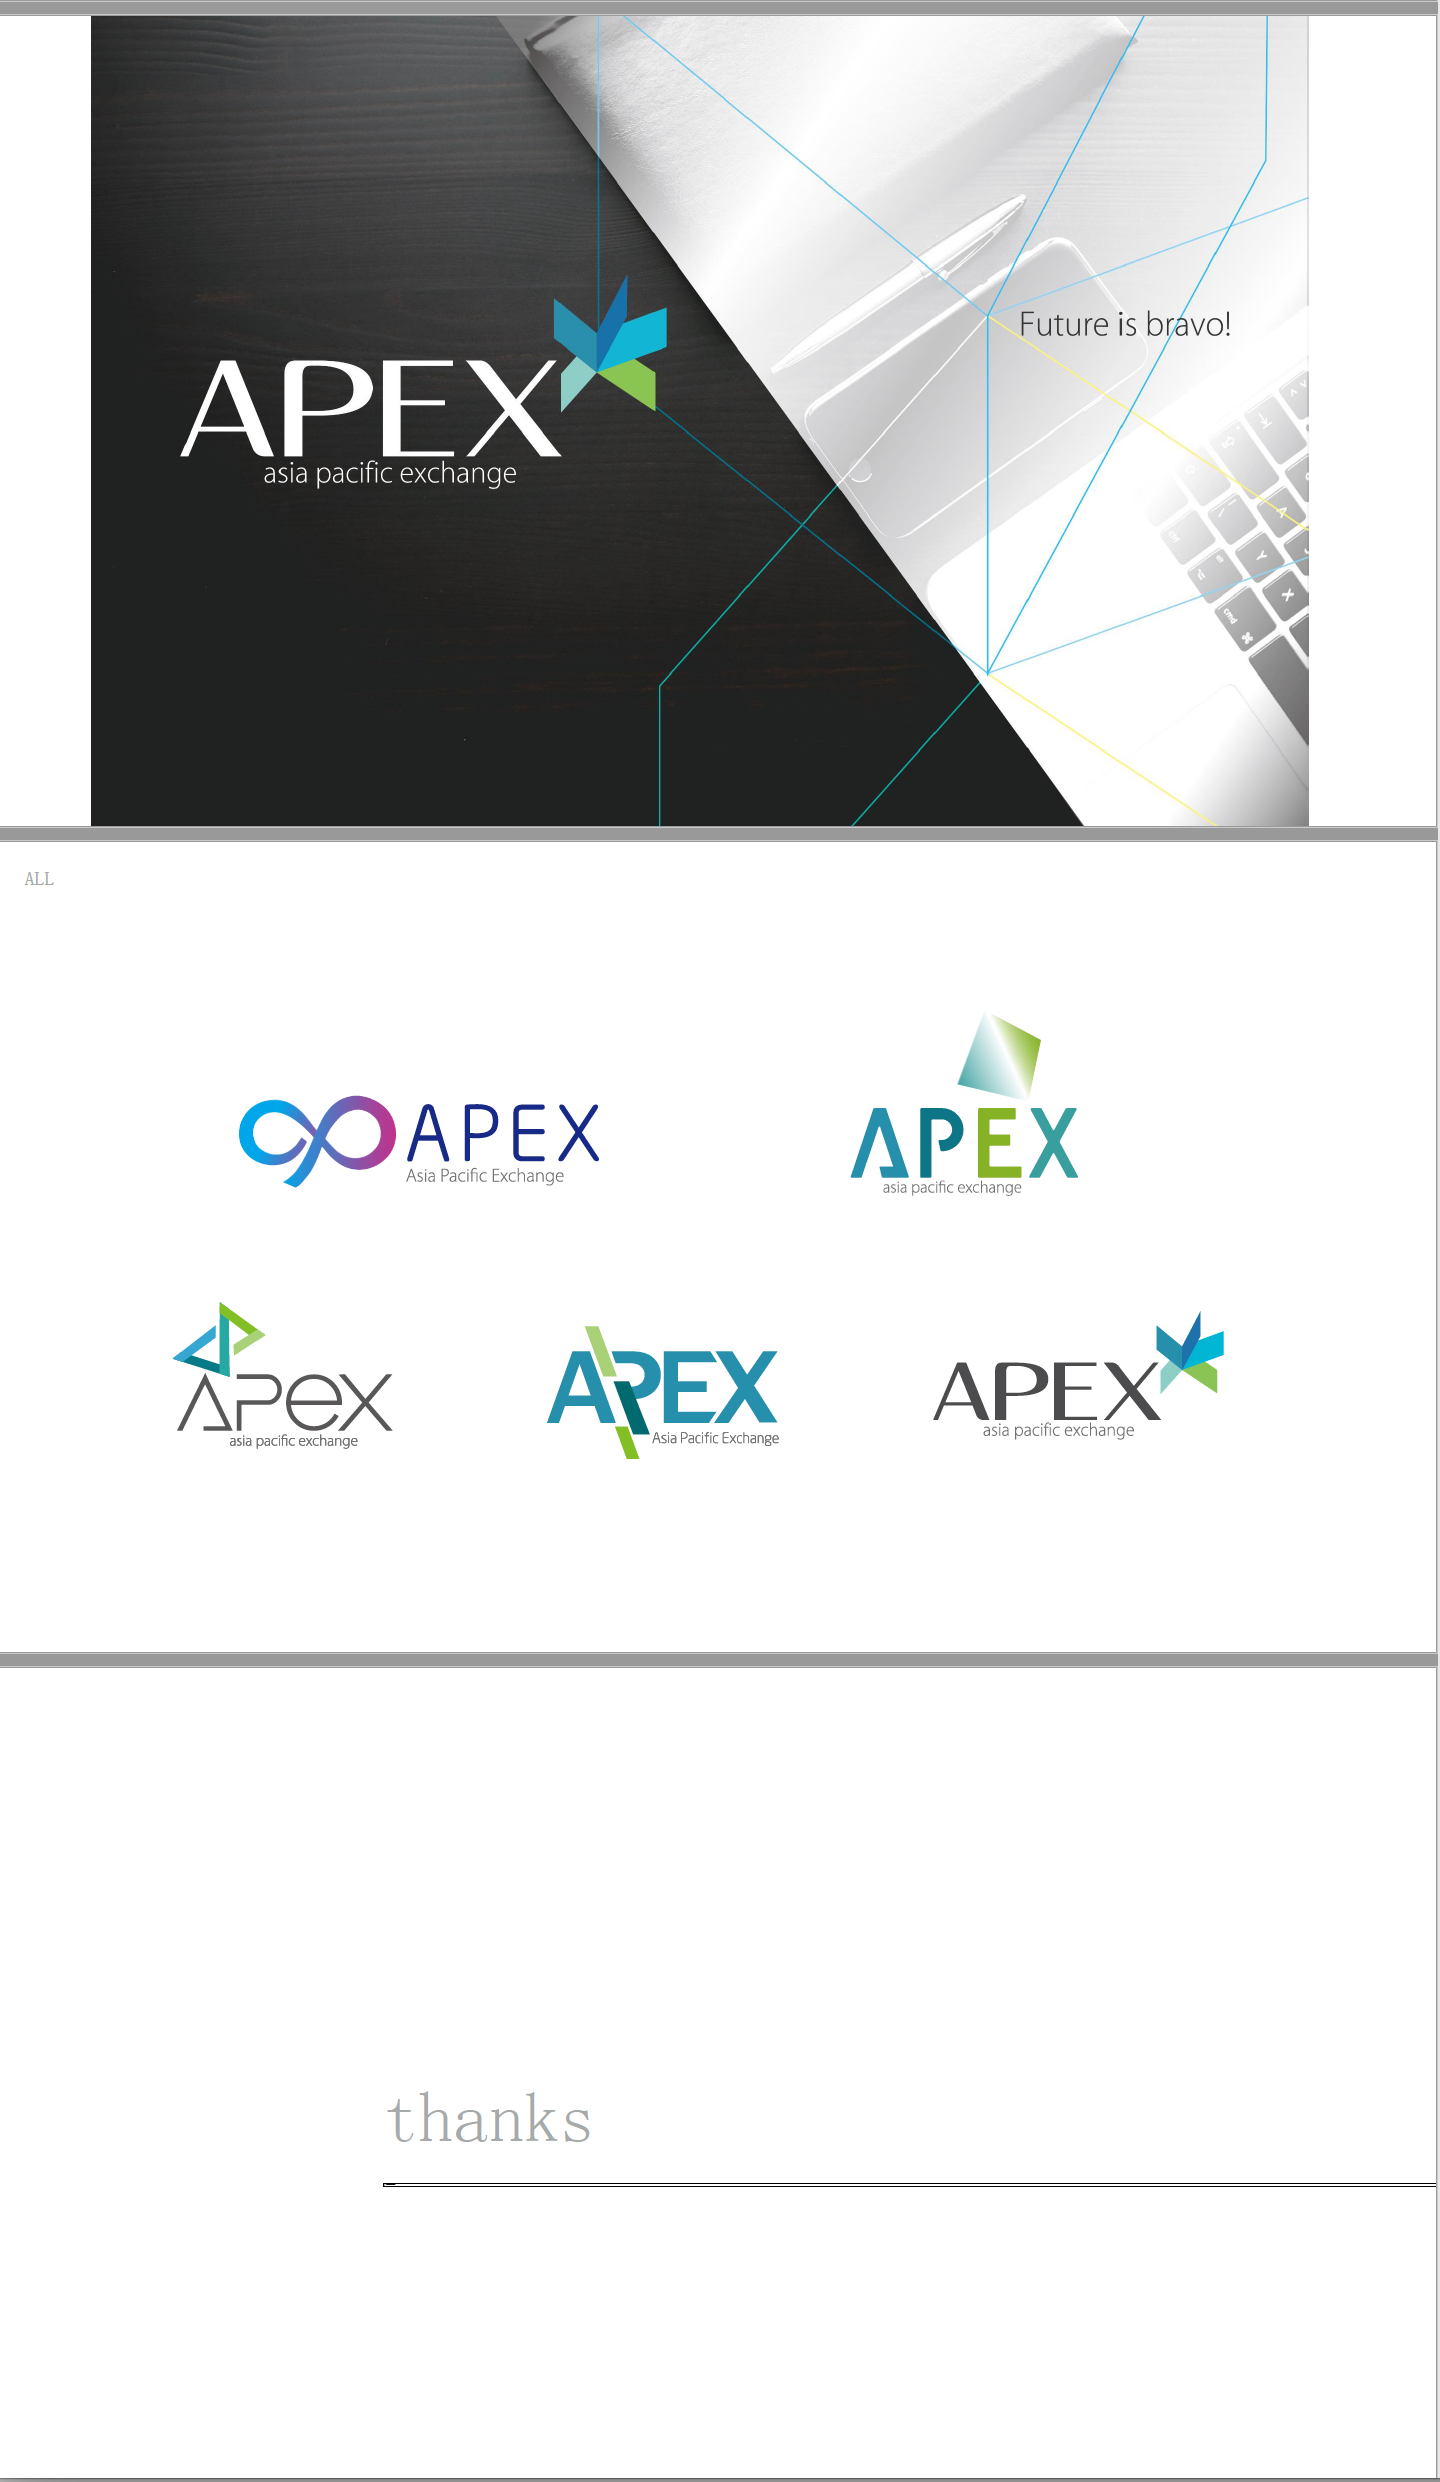 apex亚太交易所logo设计